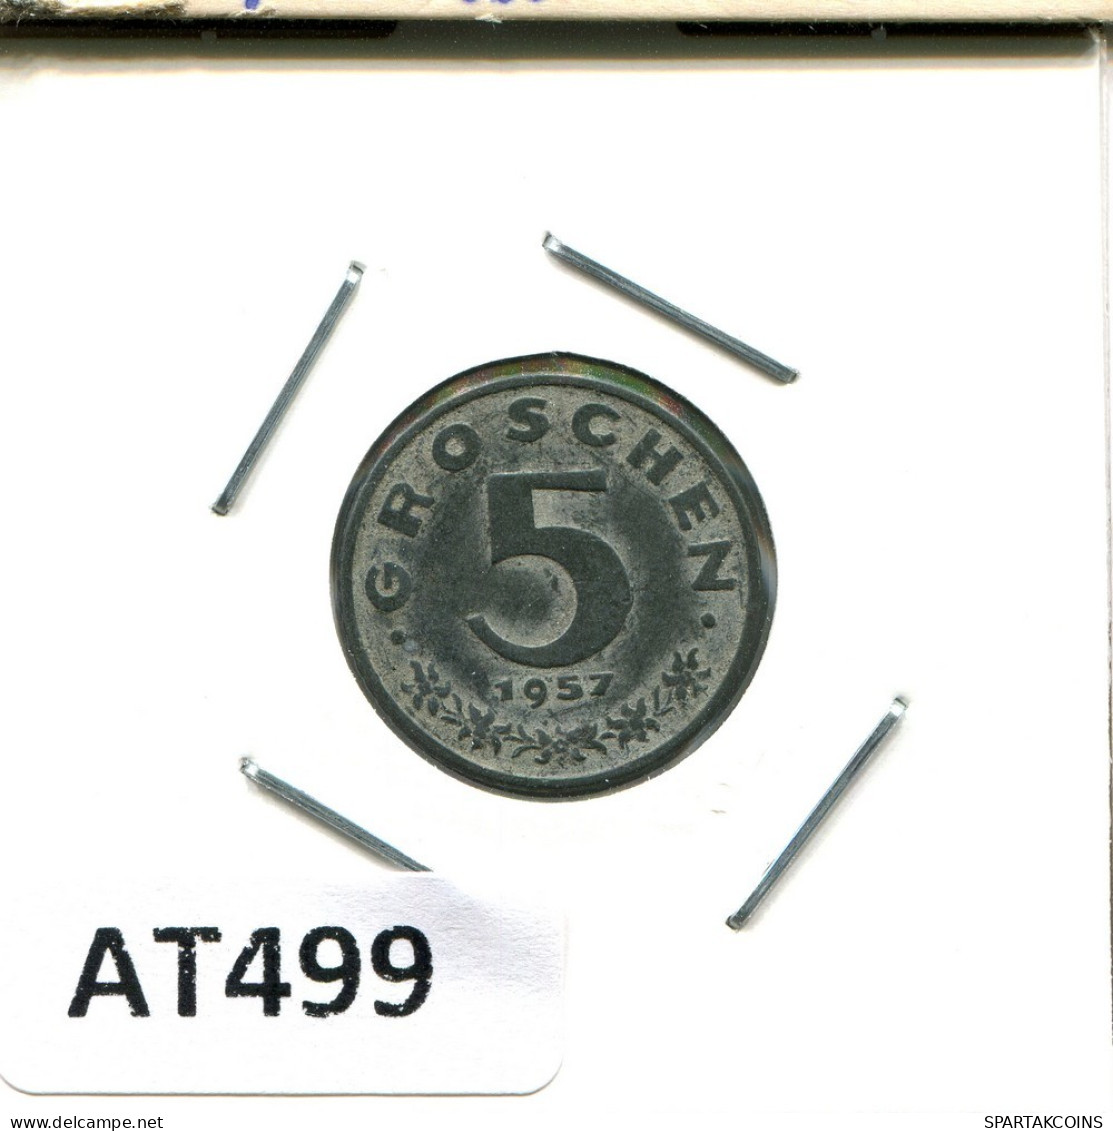 5 GROSCHEN 1957 AUSTRIA Coin #AT499.U.A - Oesterreich